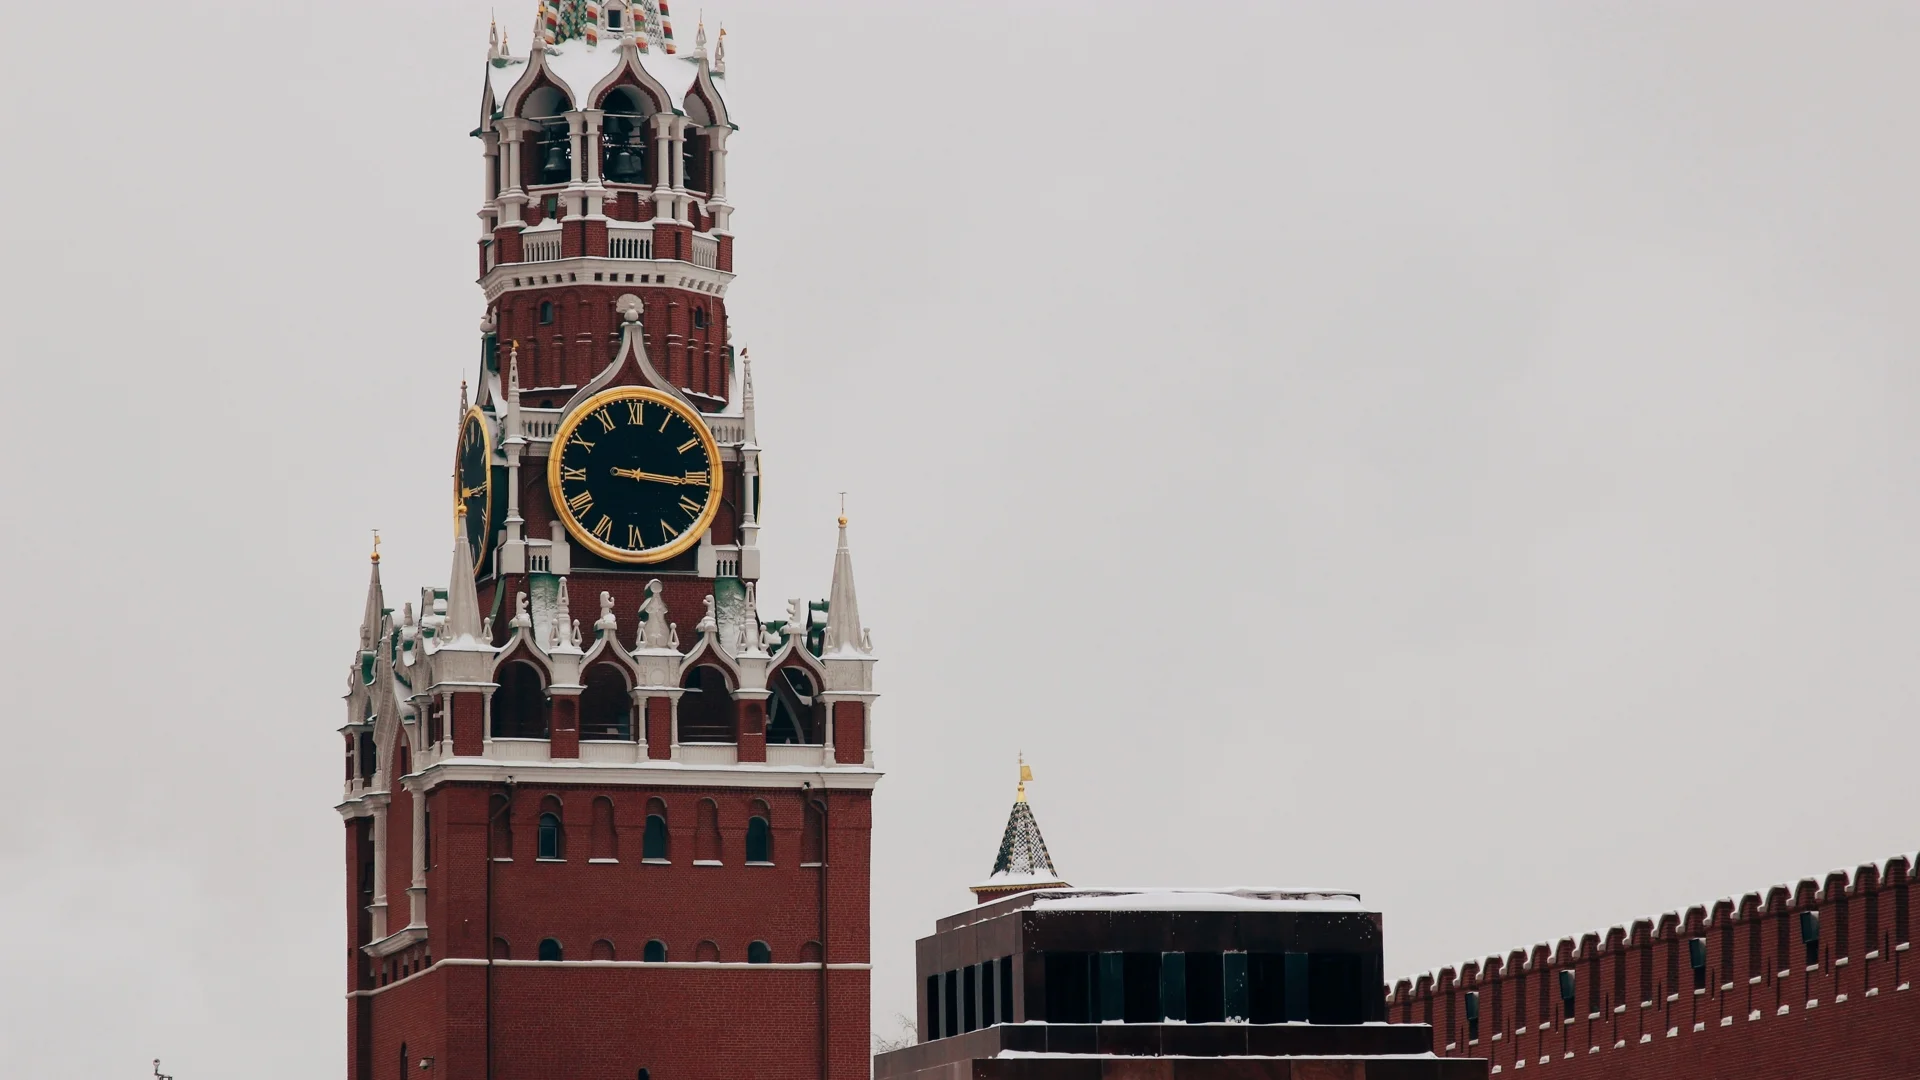 Кремъл е поръчал на медиите да пишат за "украинската следа" в новините за "Крокус хол"